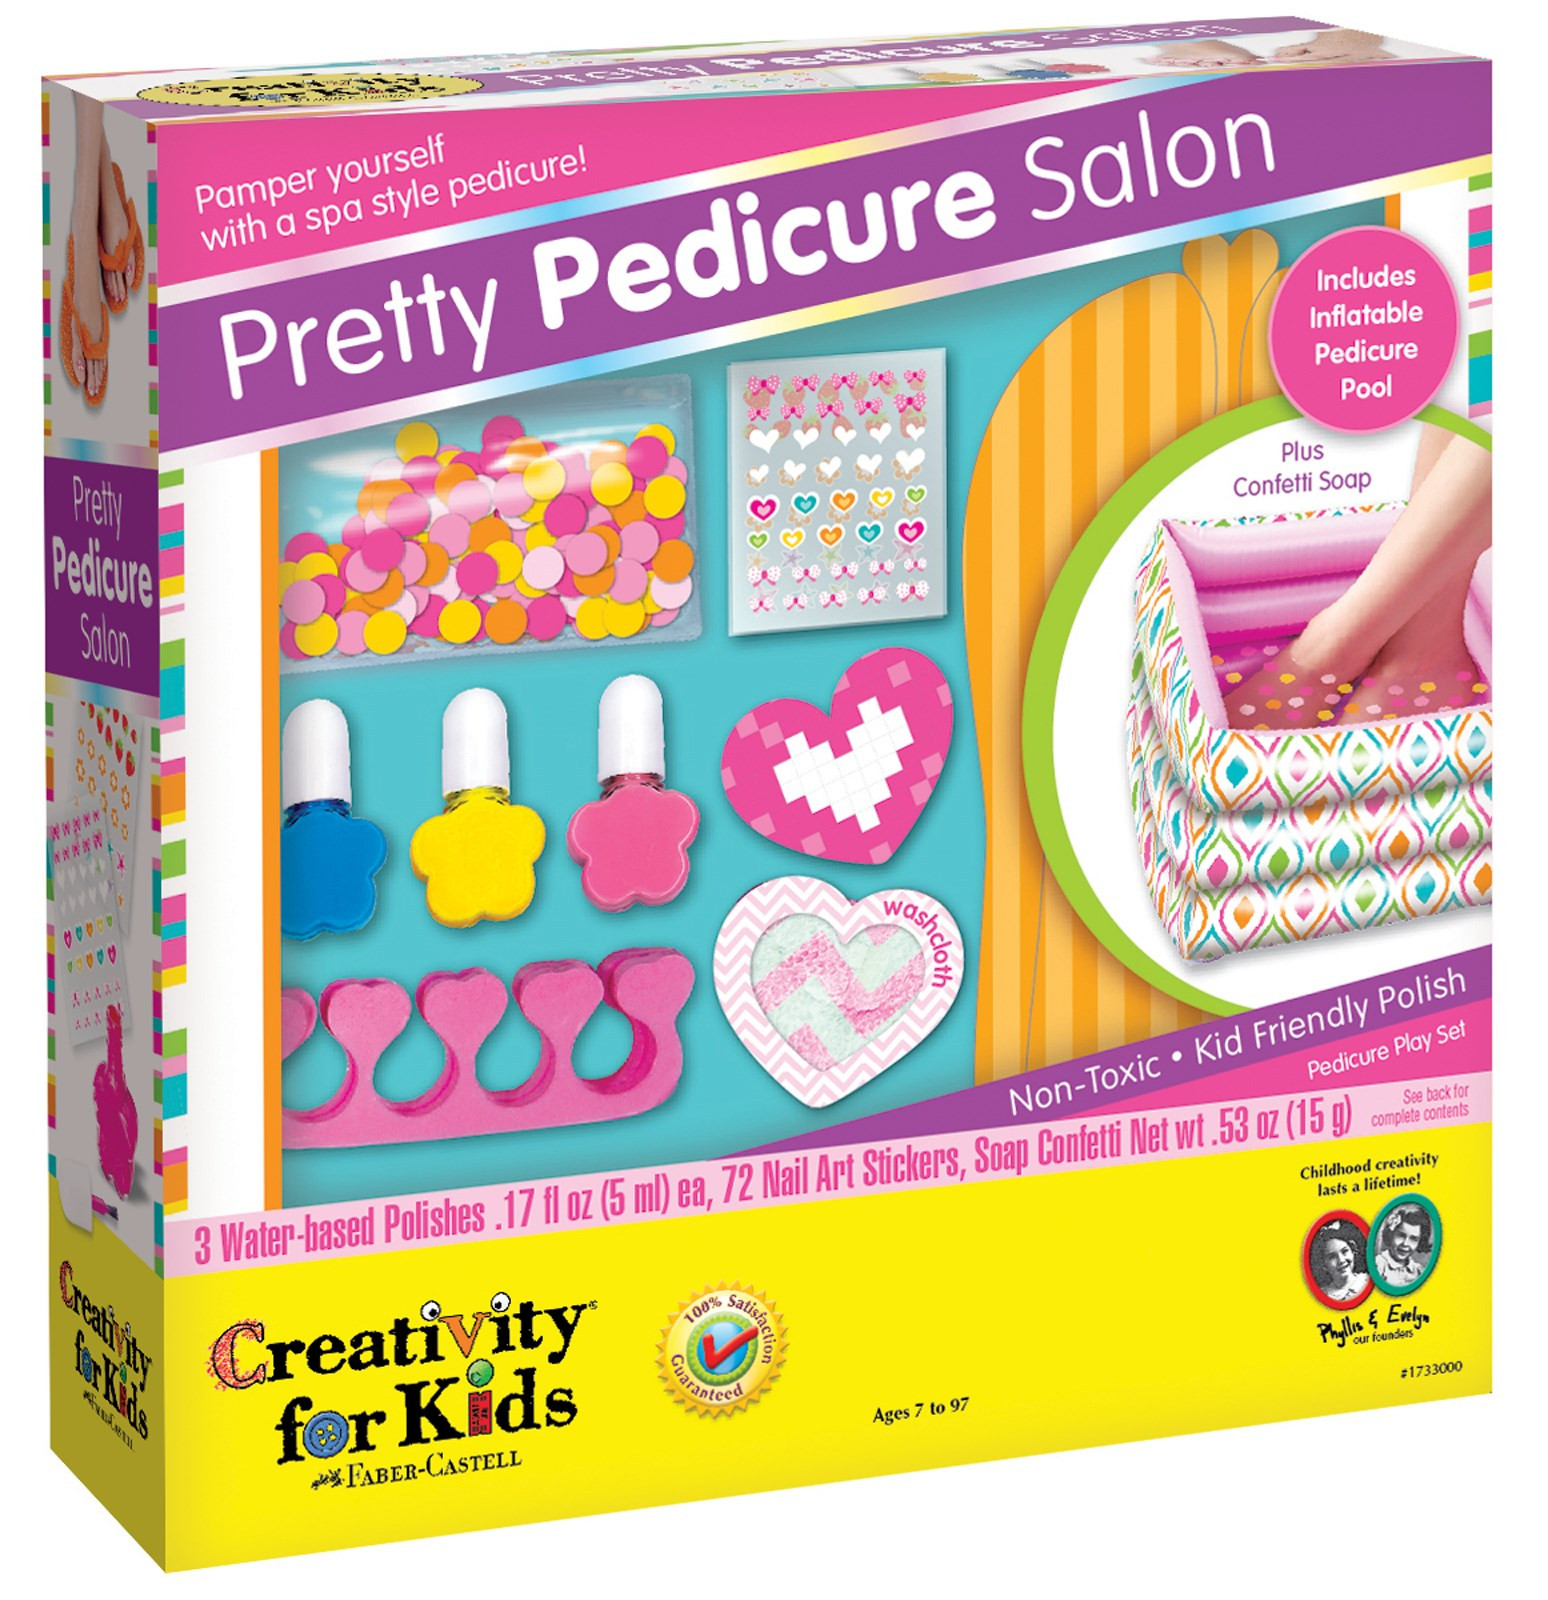 Pretty Nails New Albany
 Creativity for Kids Pretty Pedicure Salon Activity